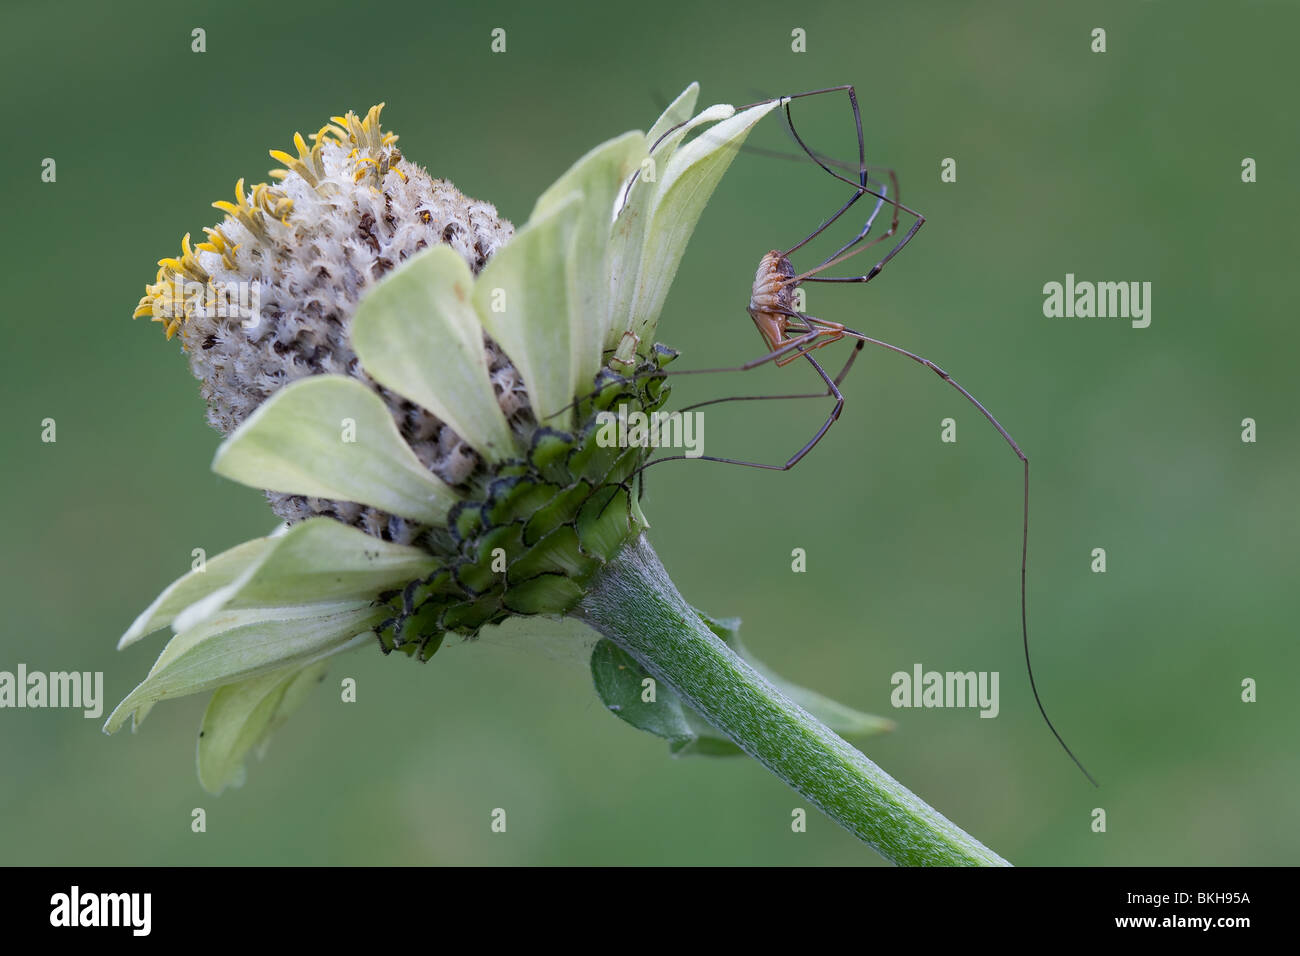 Dalle lunghe gambe ragno sul fiore di Echinacea sullo sfondo verde Foto Stock